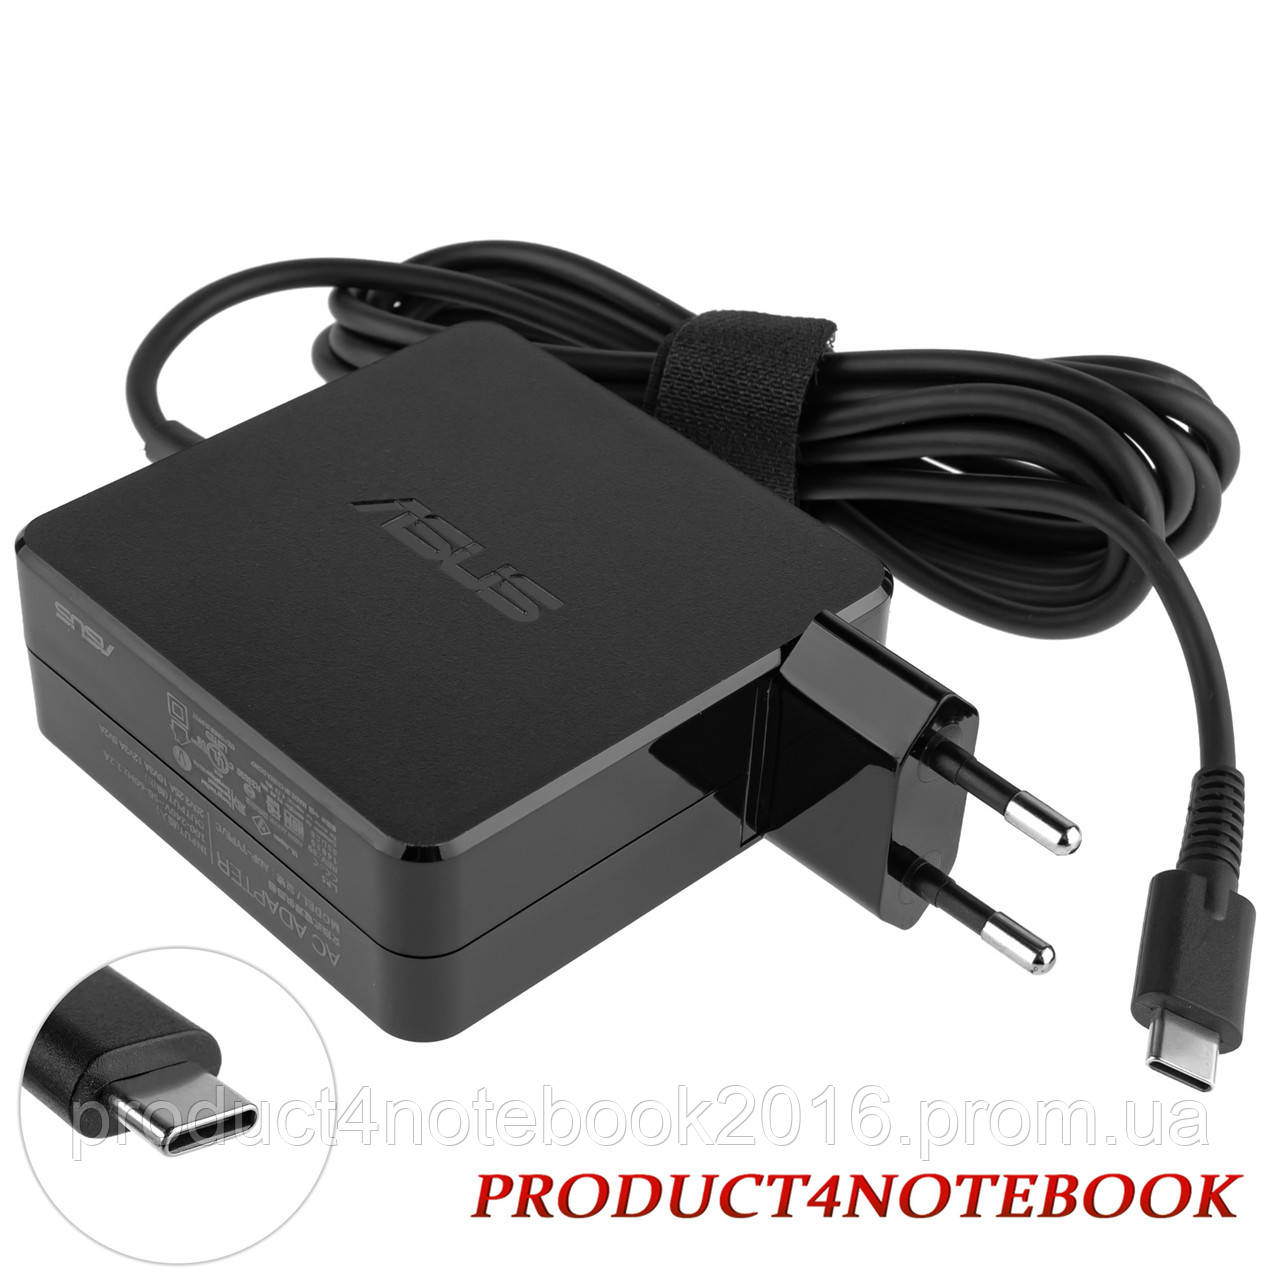 Оригінальний блок живлення для ноутбука ASUS USB-C 65 W, Type-C, квадратний, адаптер + перехідник, Black